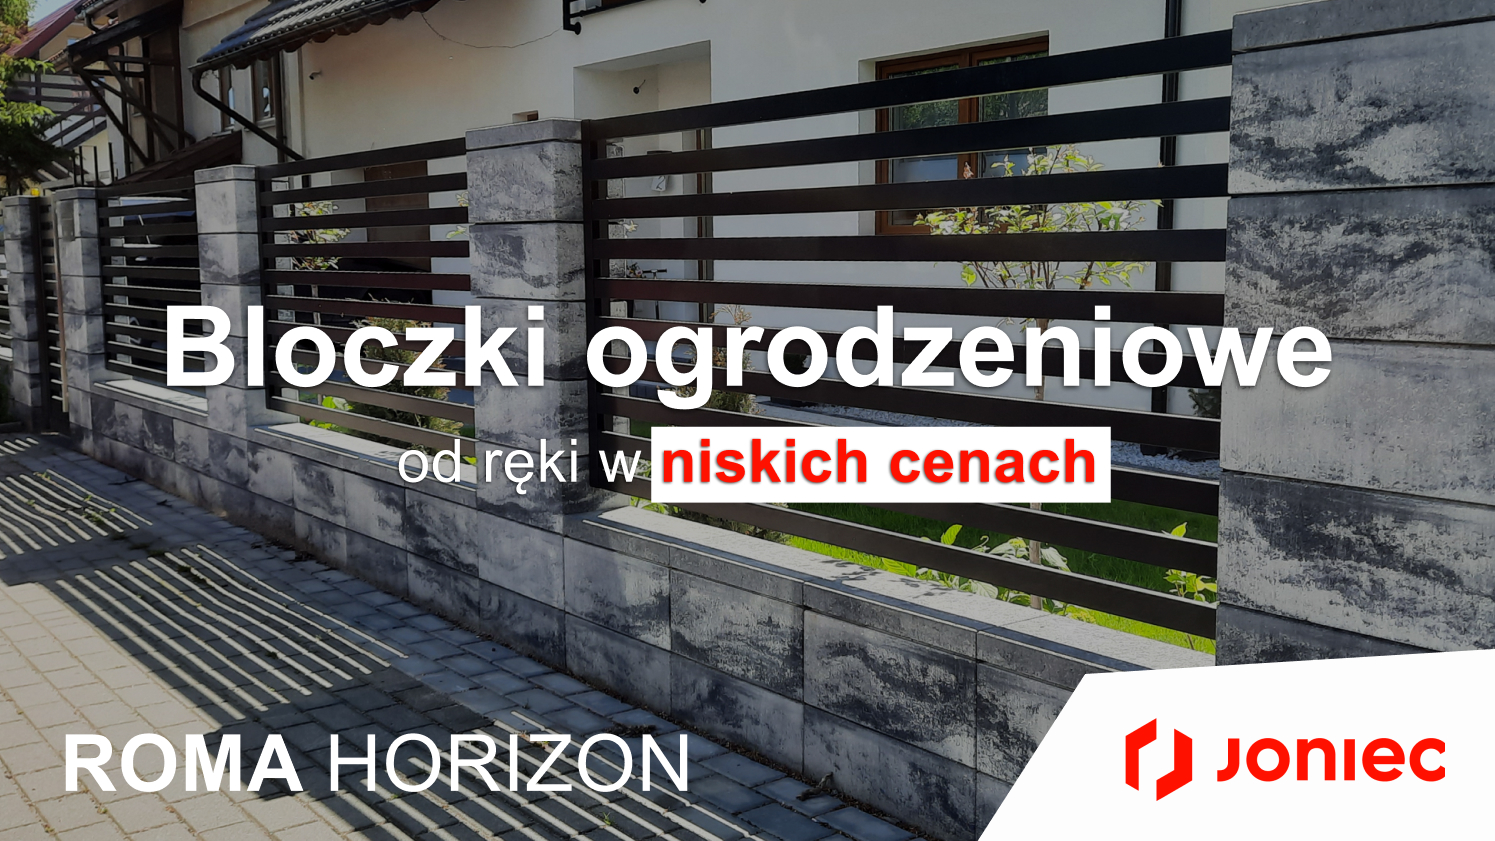 Bloczki ogrodzeniowe JONIEC od ręki w niskich cenach z dostawą HDS Gdańsk, Gdynia, Sopot, Tczew, woj. Pomorskie